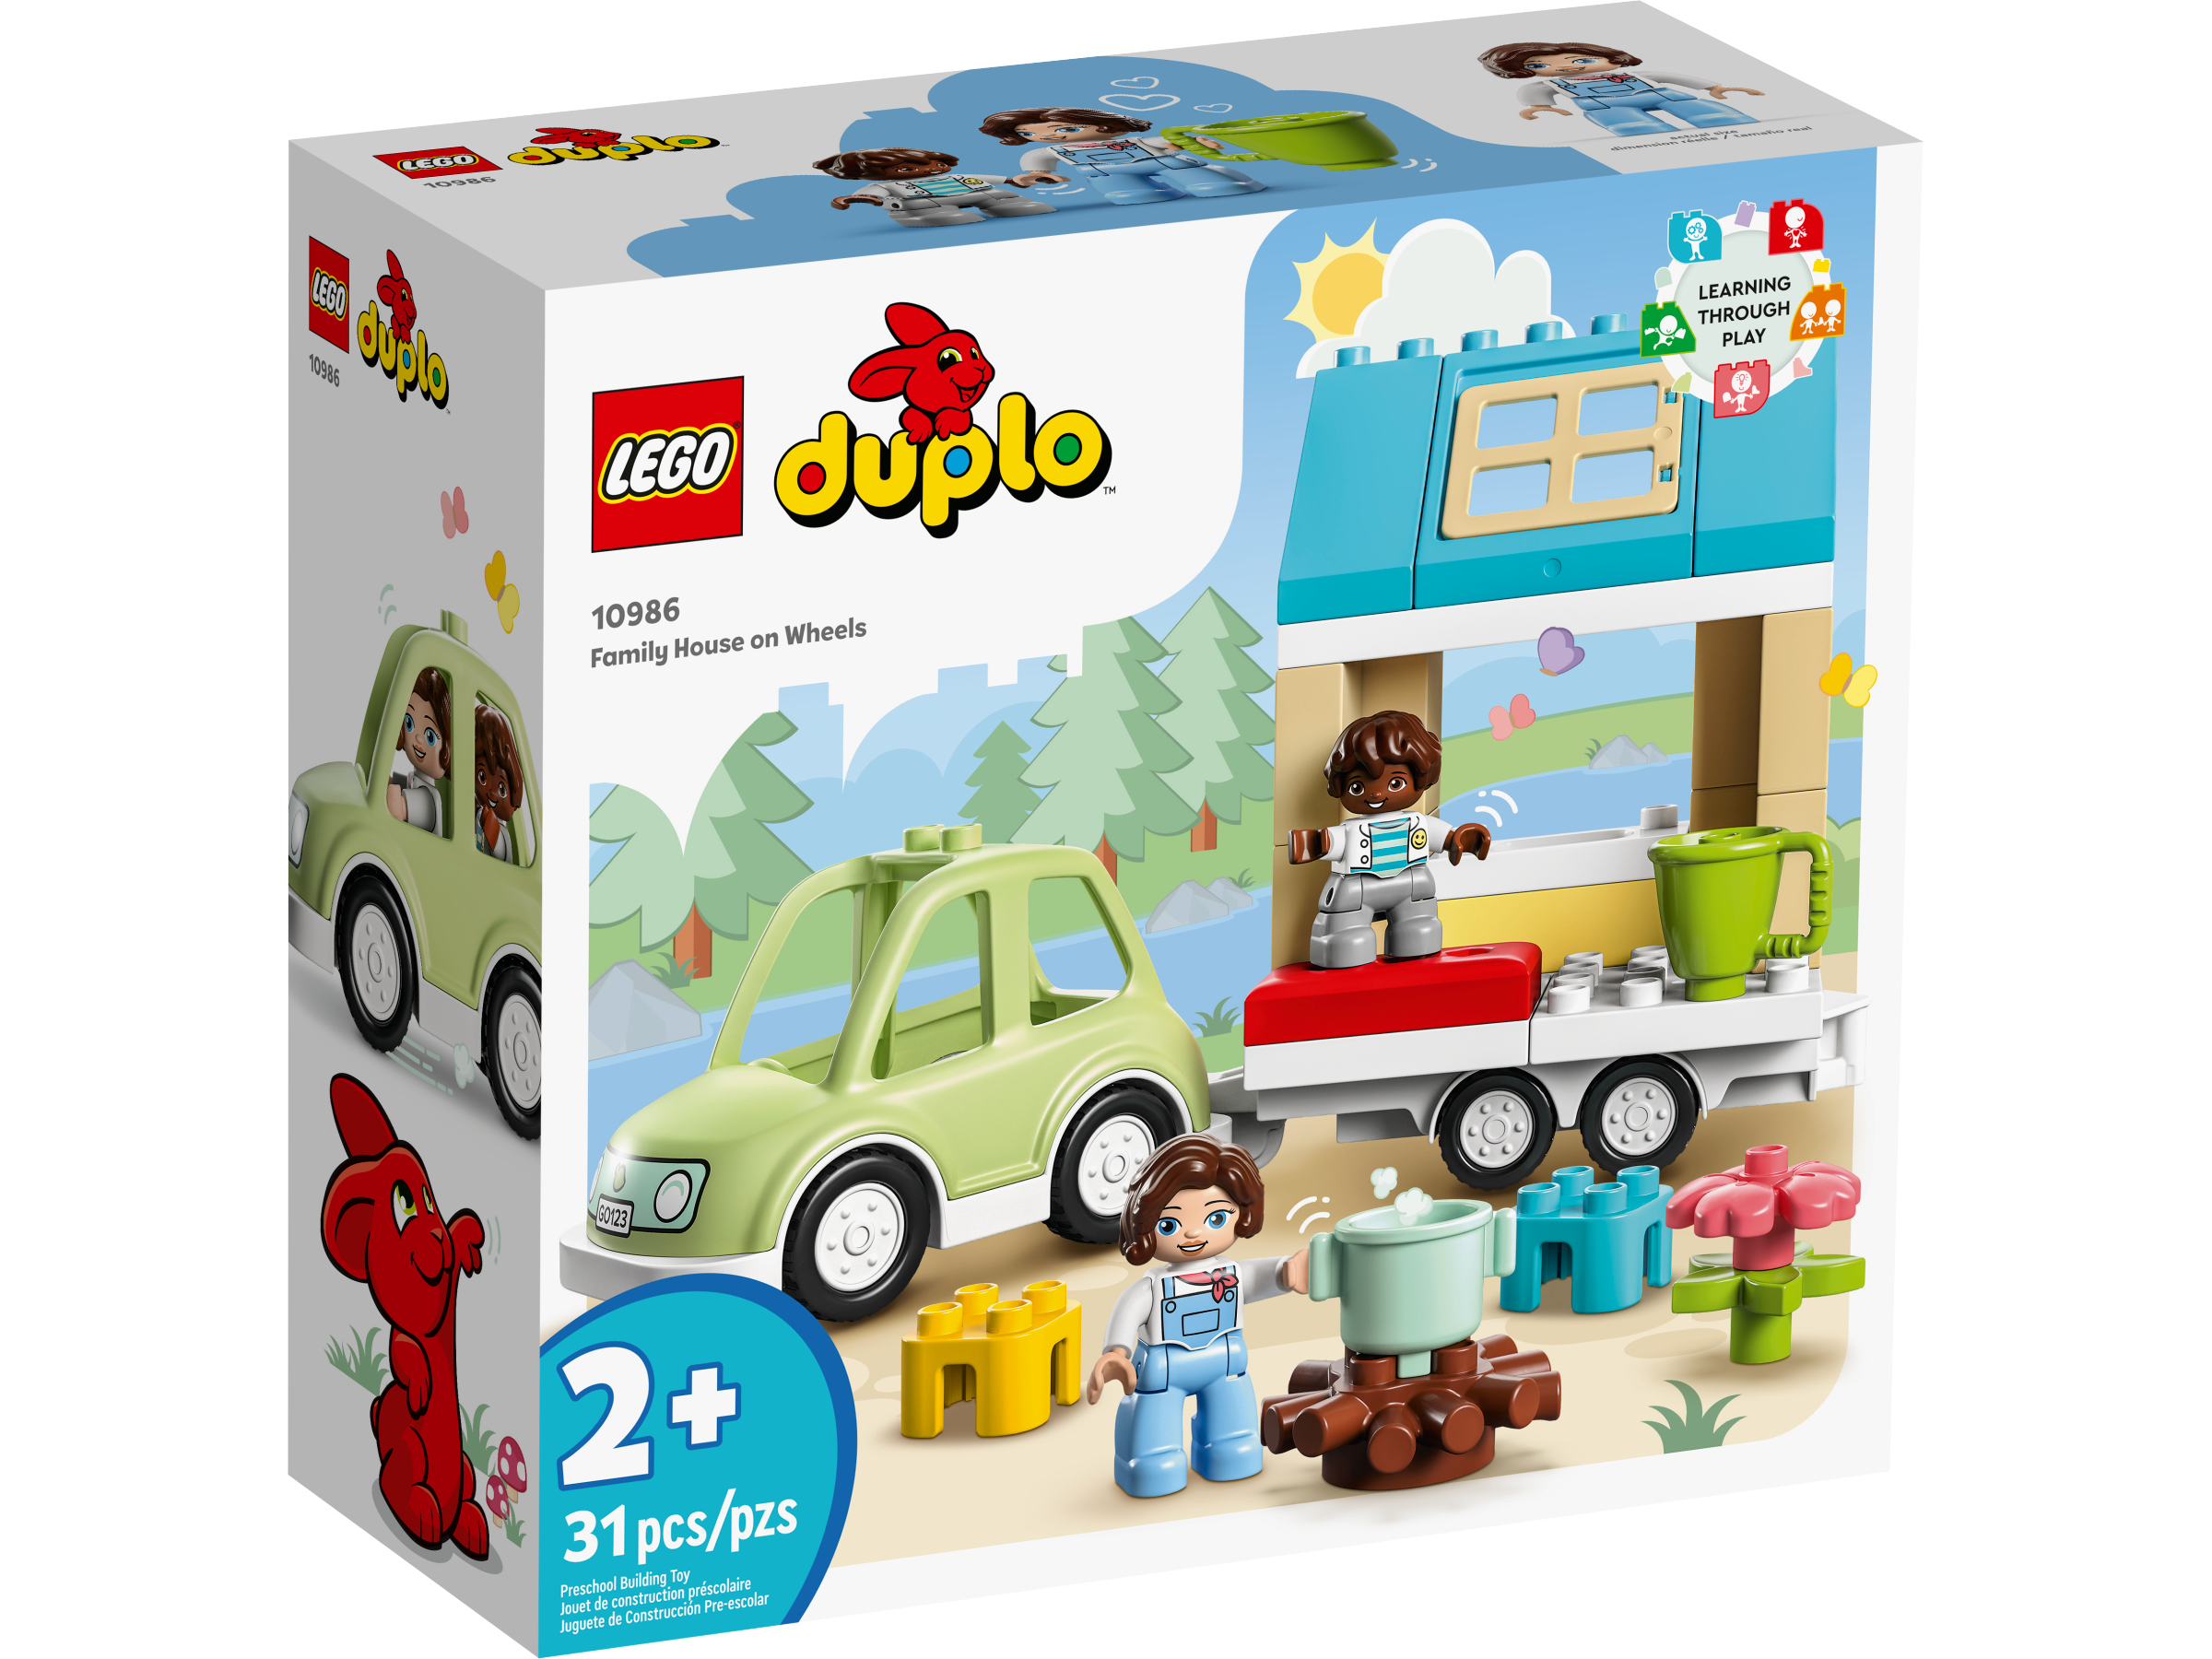 Herinnering licentie Ontwikkelen Cadeaus en speelgoed voor kinderen vanaf 1,5 jaar | Peuters van 18 maanden  tot 3 jaar | Officiële LEGO® winkel NL